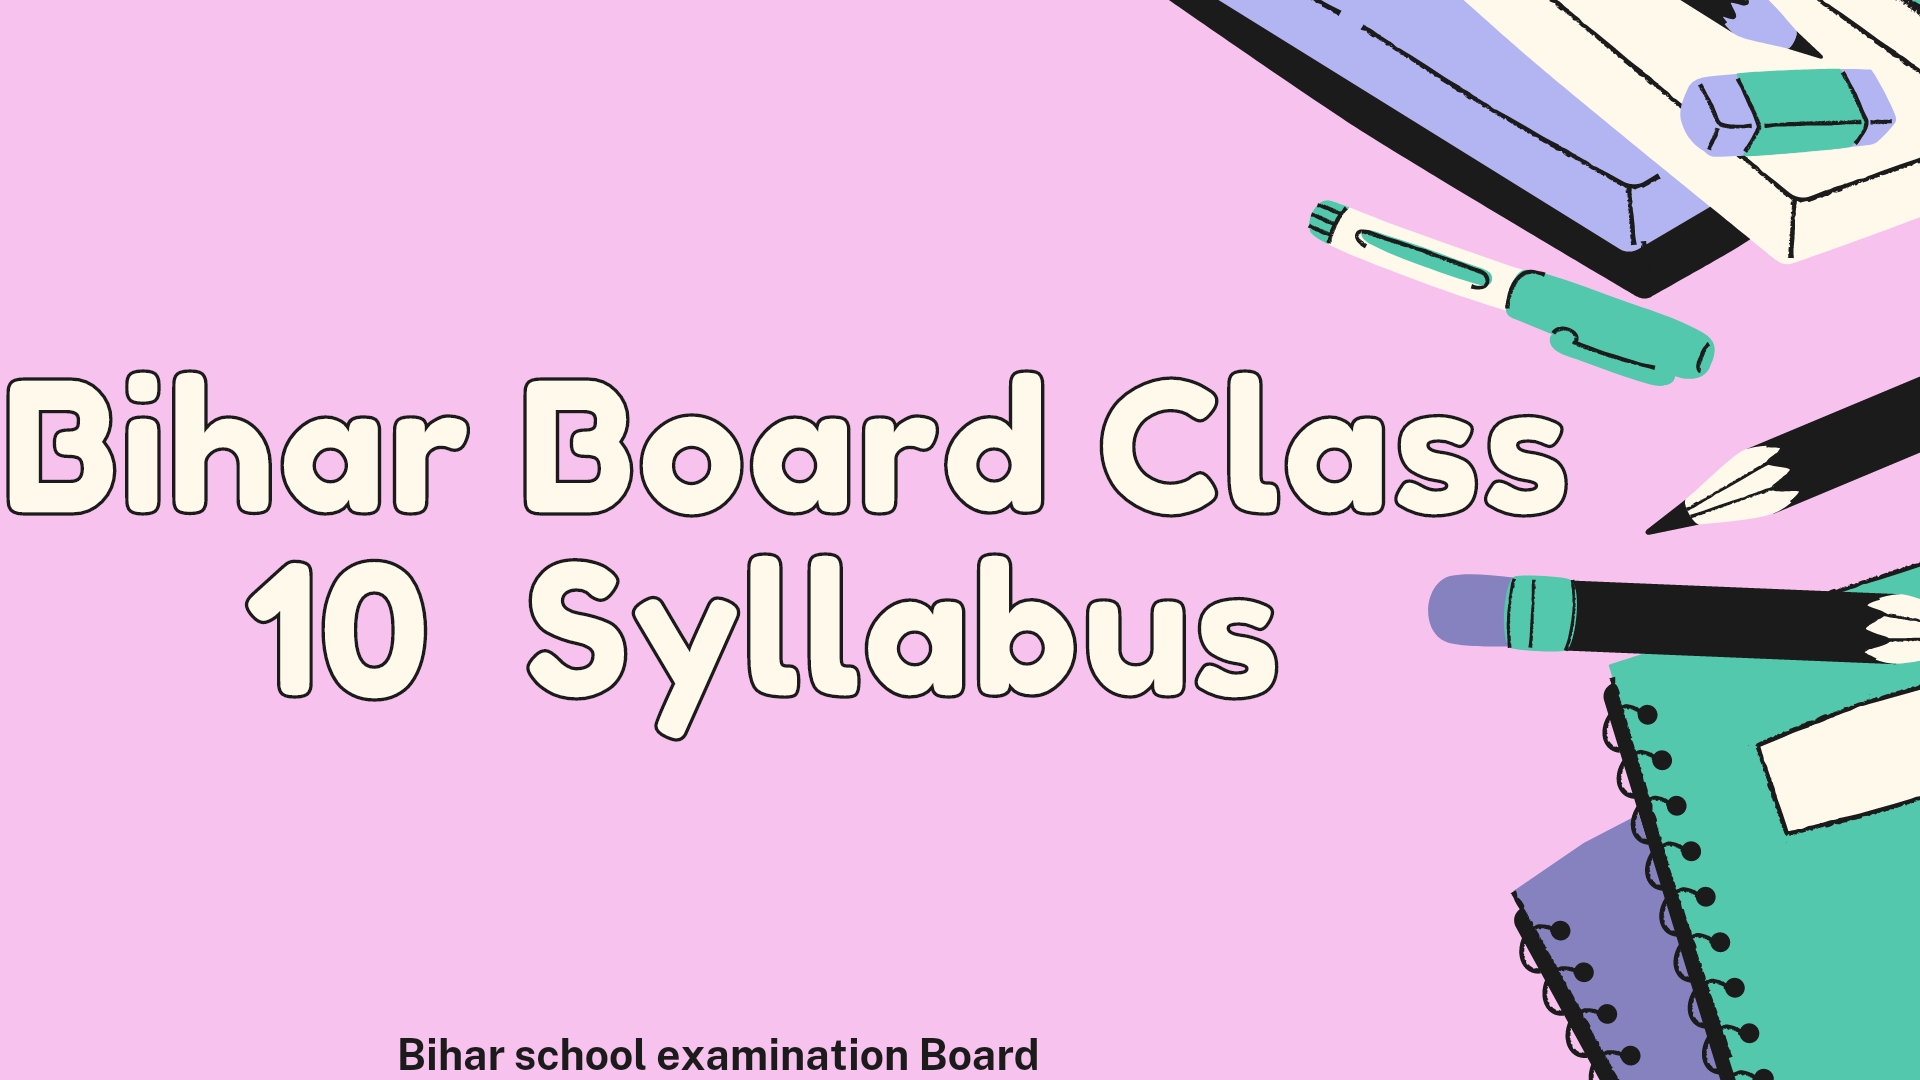 Bihar Board Class 10 Syllabus